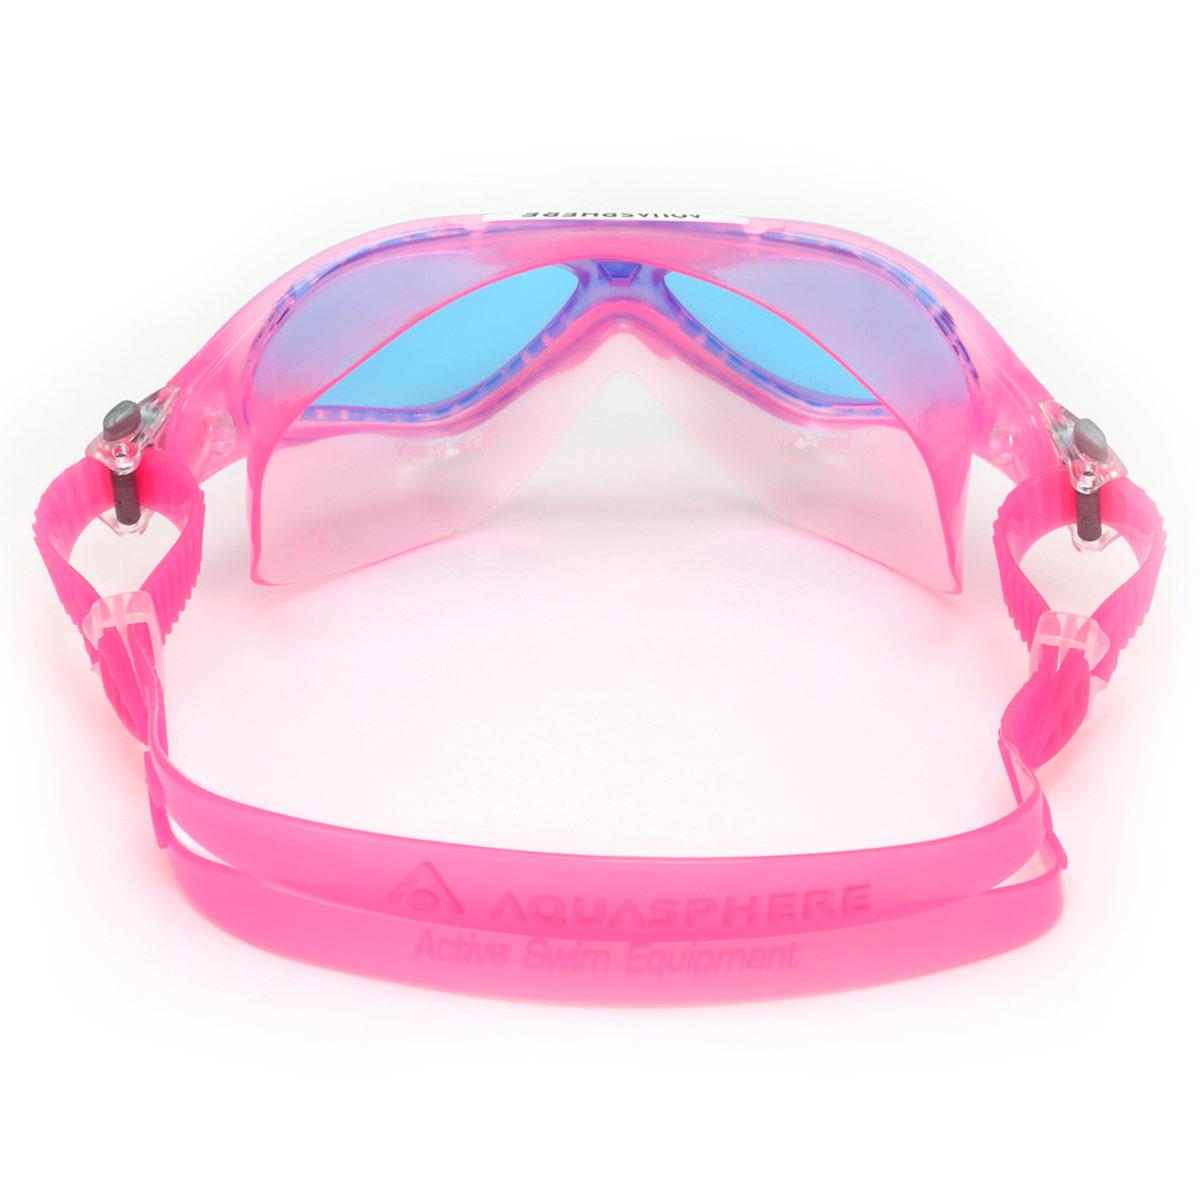 Aquasphere Vista Junior Blue Tinted Lens Goggles - Pink